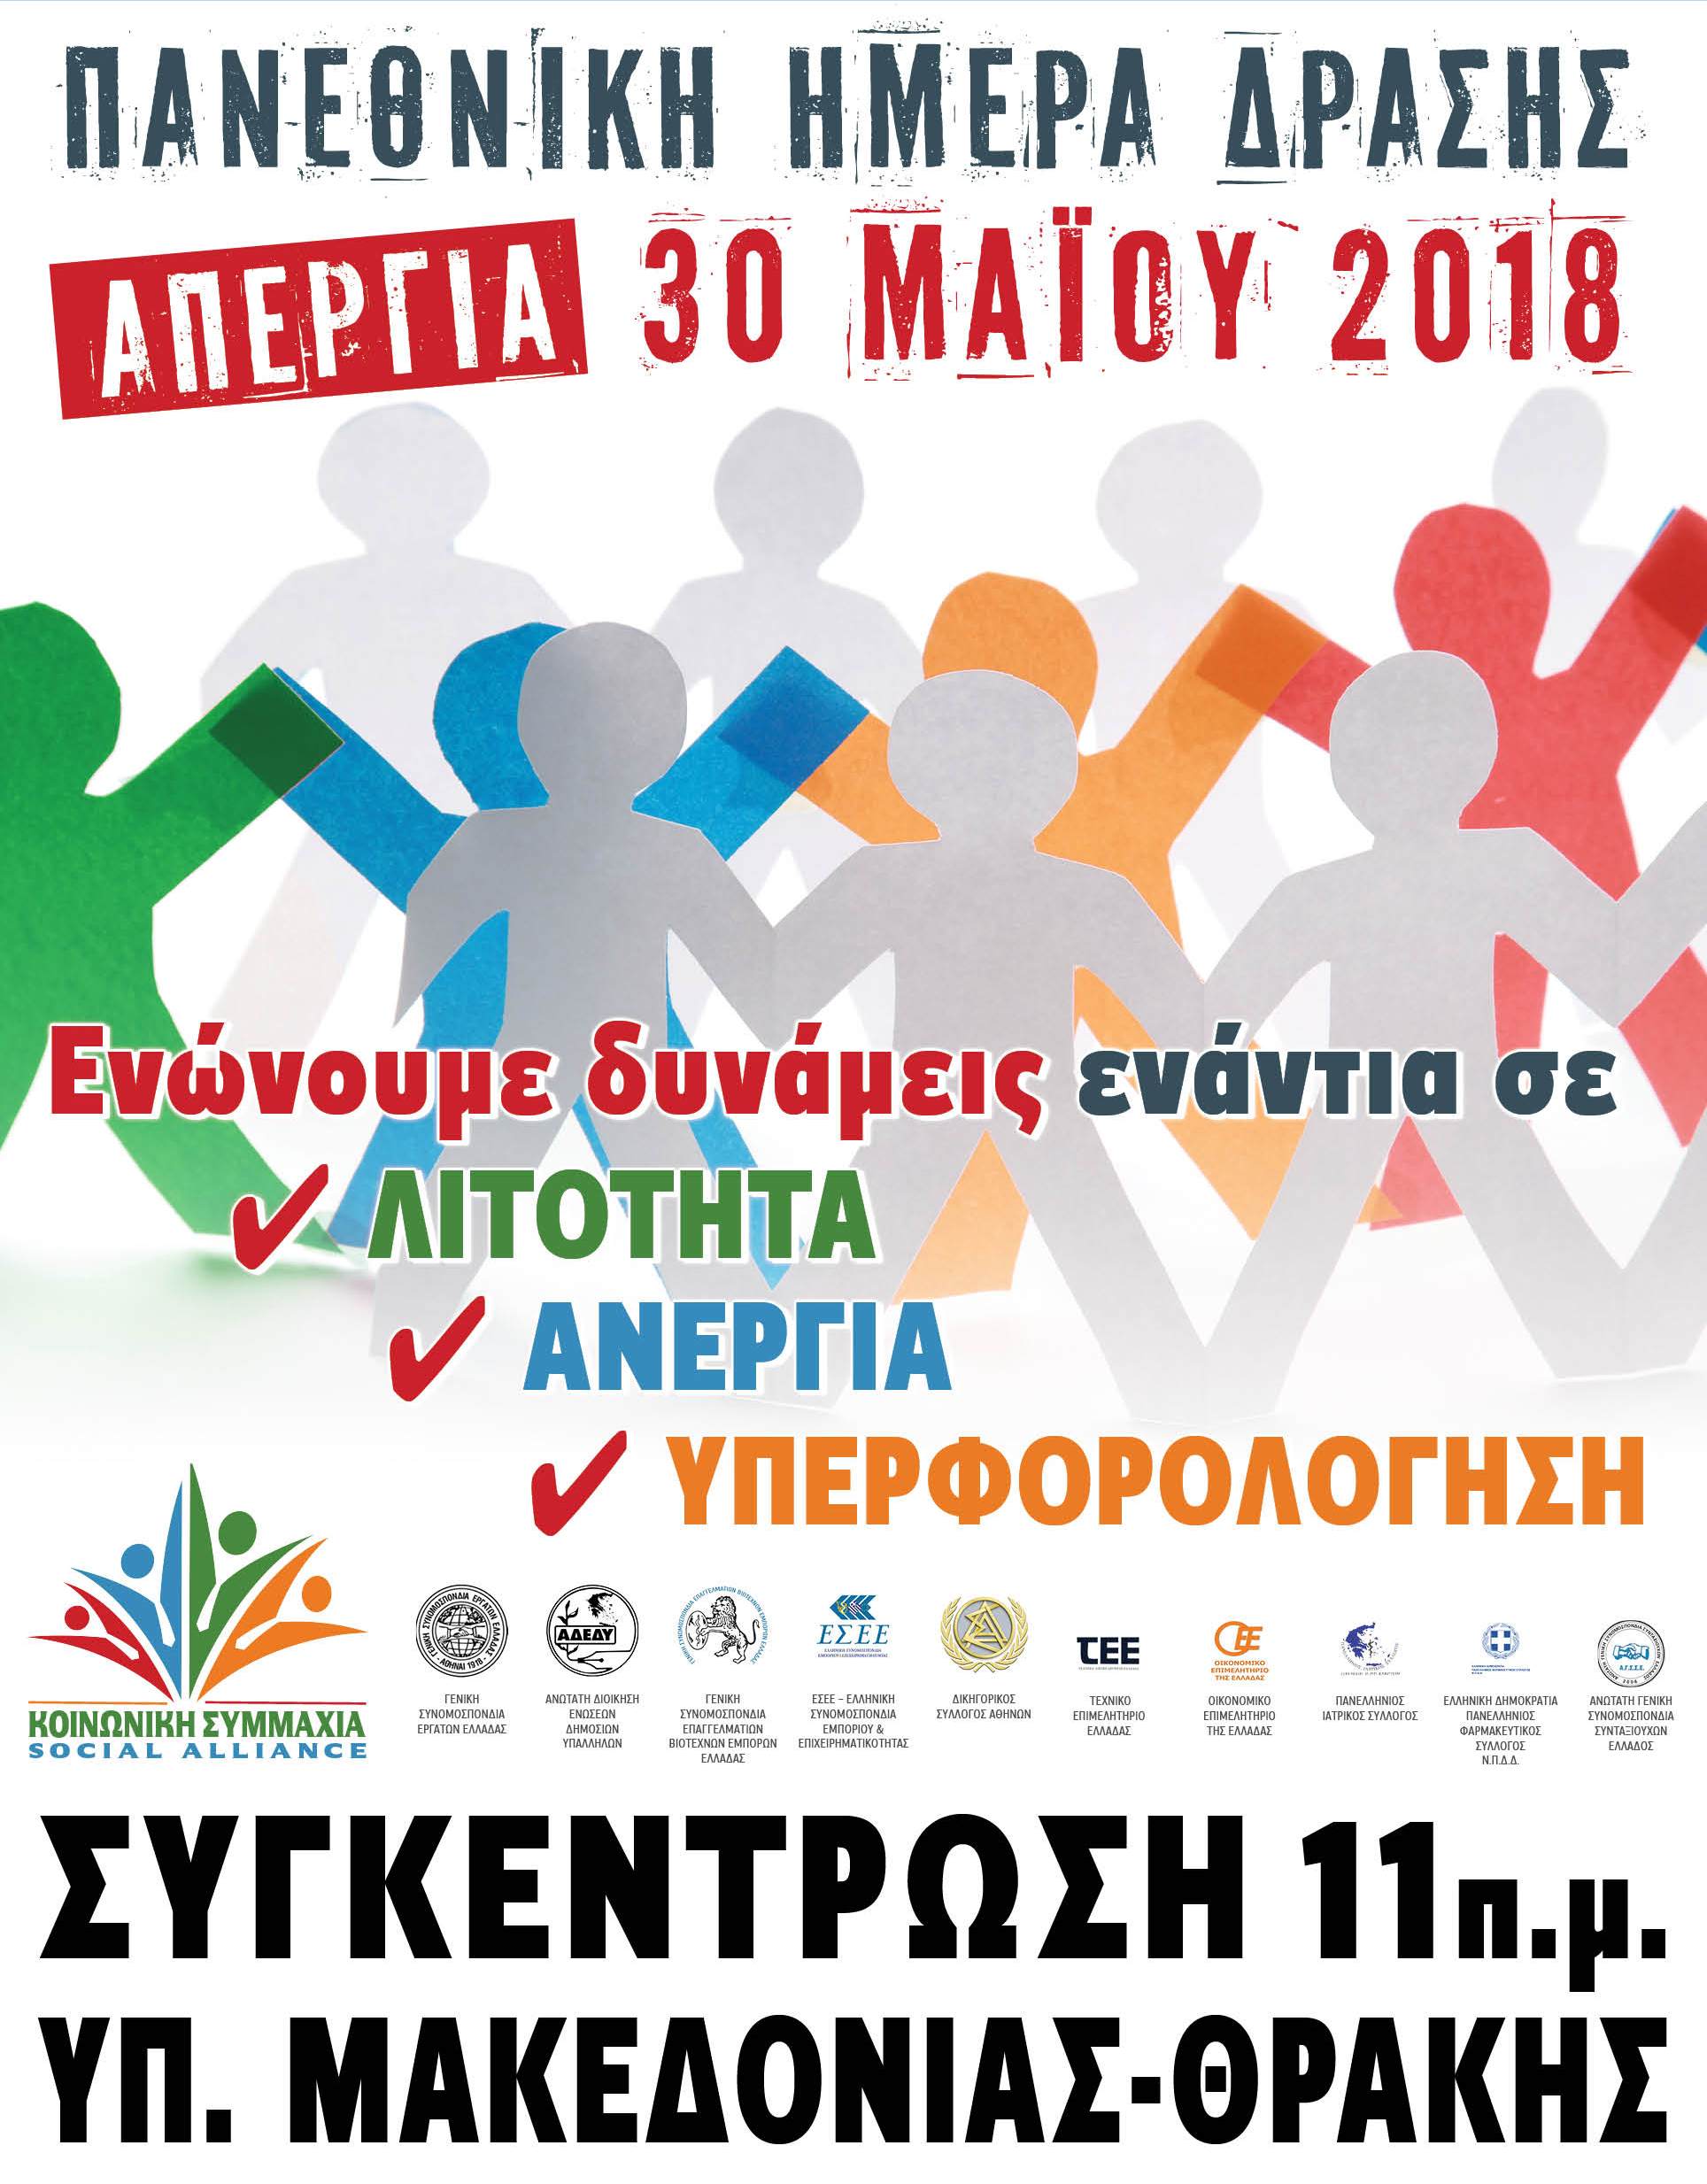 ΕΓΚΥΚΛΙΟΣ -Πανεθνική Ημέρα Δράσης Απεργία 30 Μαΐου 2018 Συγκέντρωση 11π.μ. Υπουργείο Μακεδονίας – Θράκης